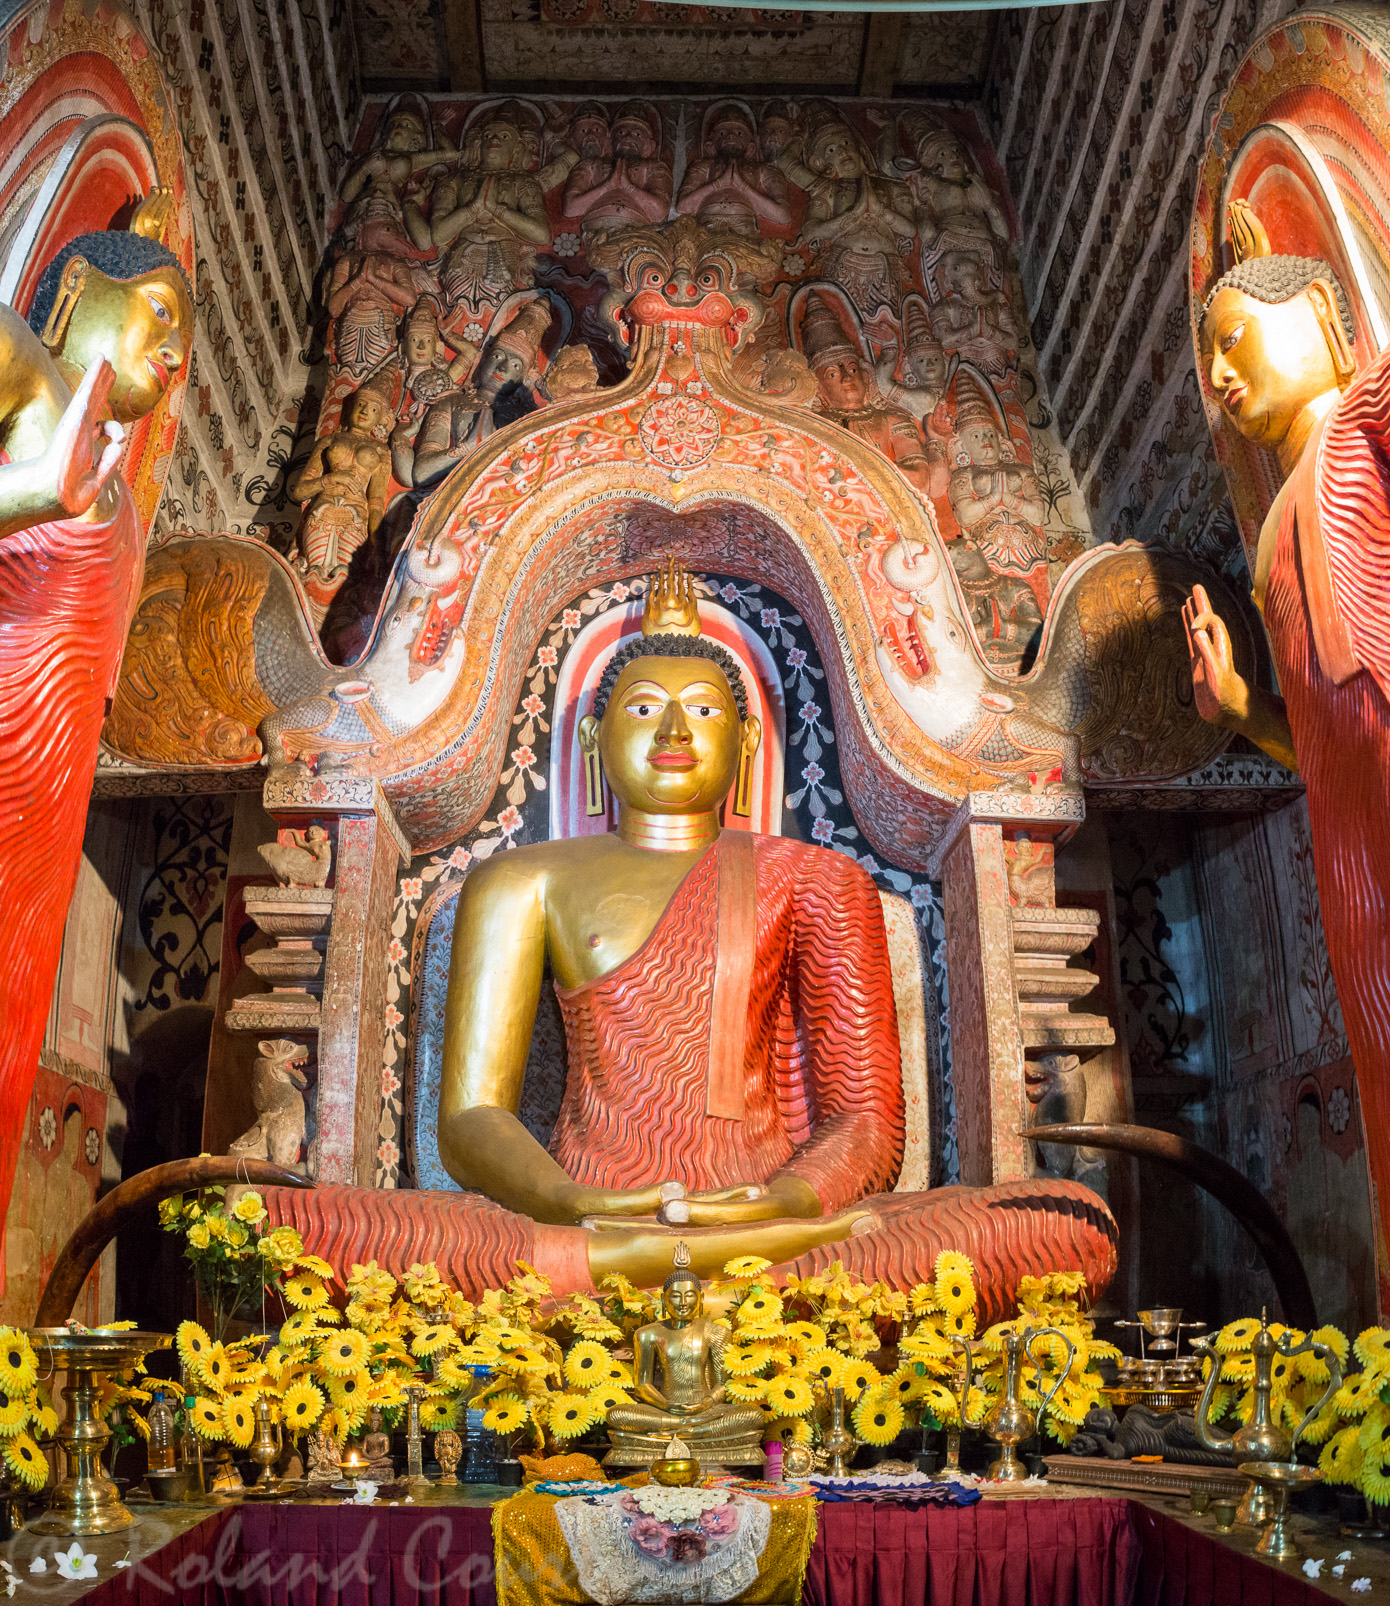 Le temple de Lankatilake renferme une statue du Bouddha.